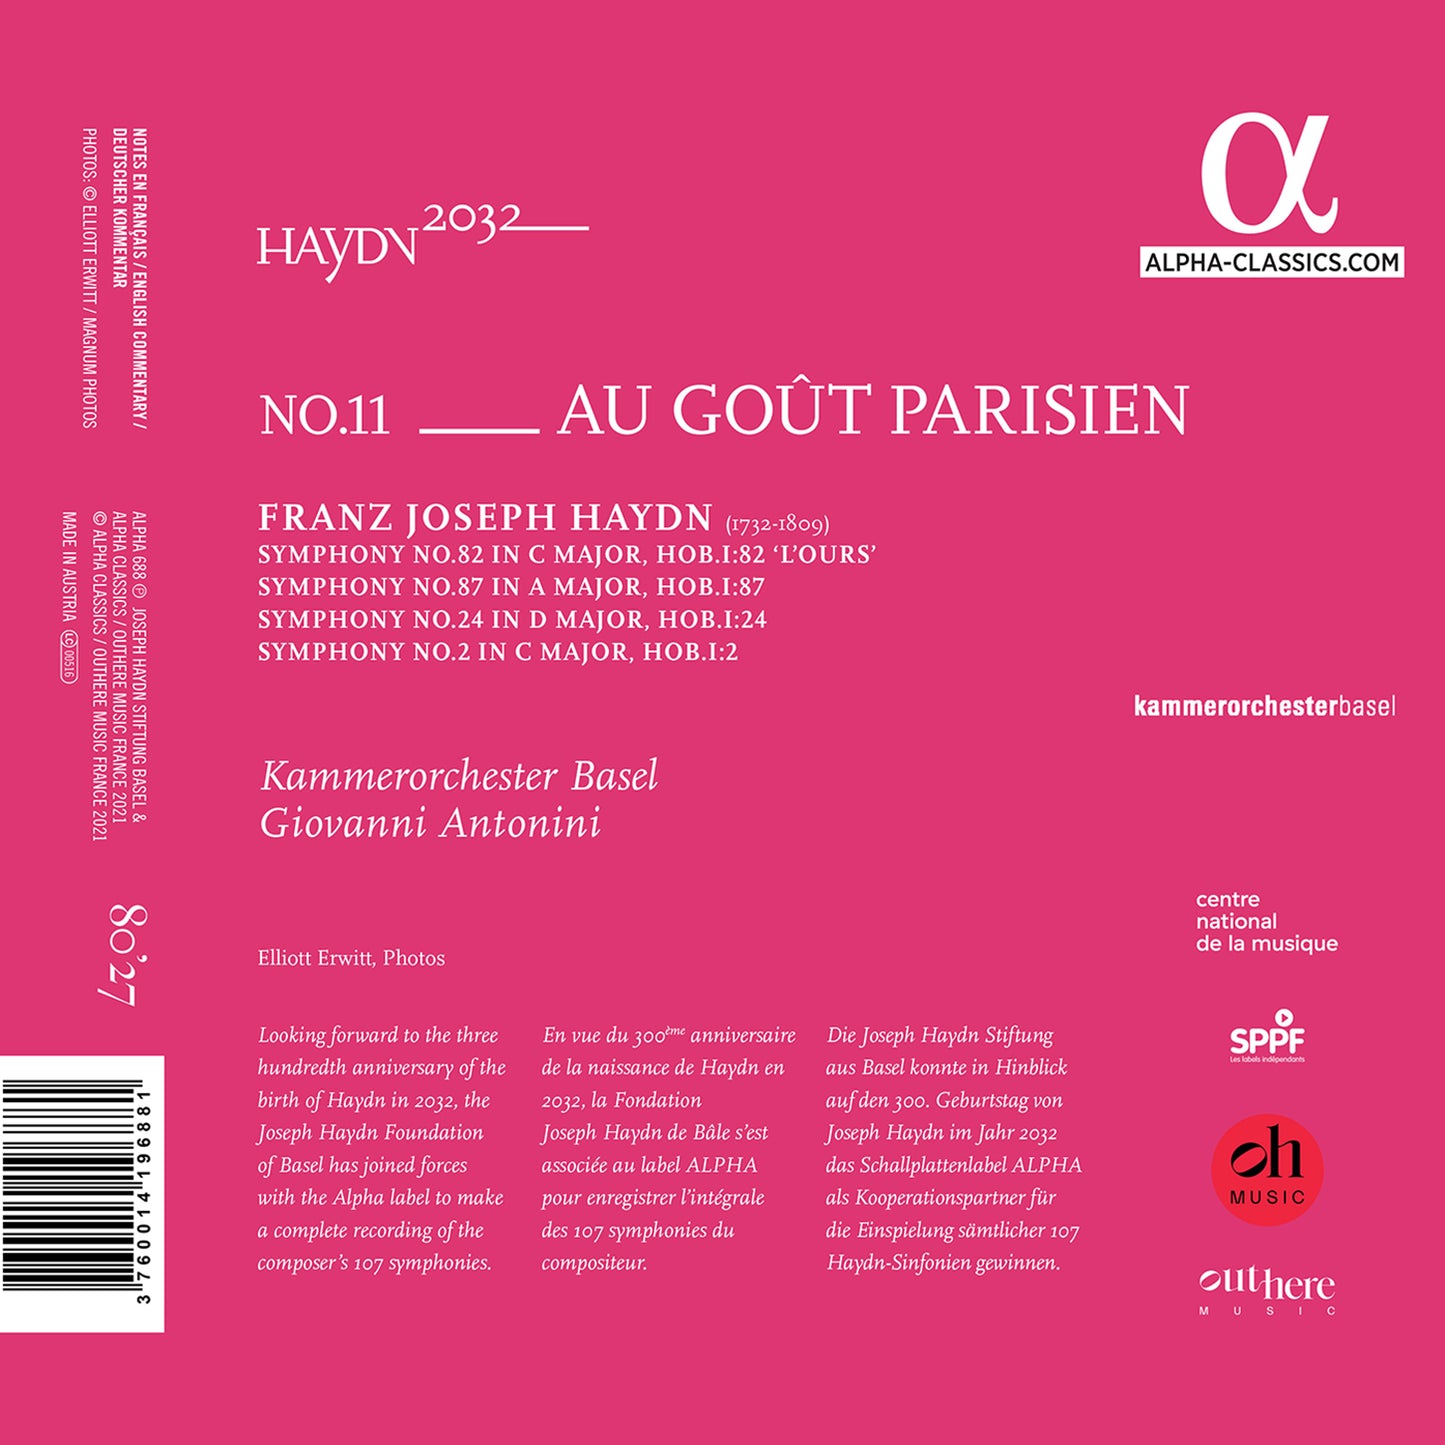 Haydn 2032, Vol. 11: Au Goût Parisien